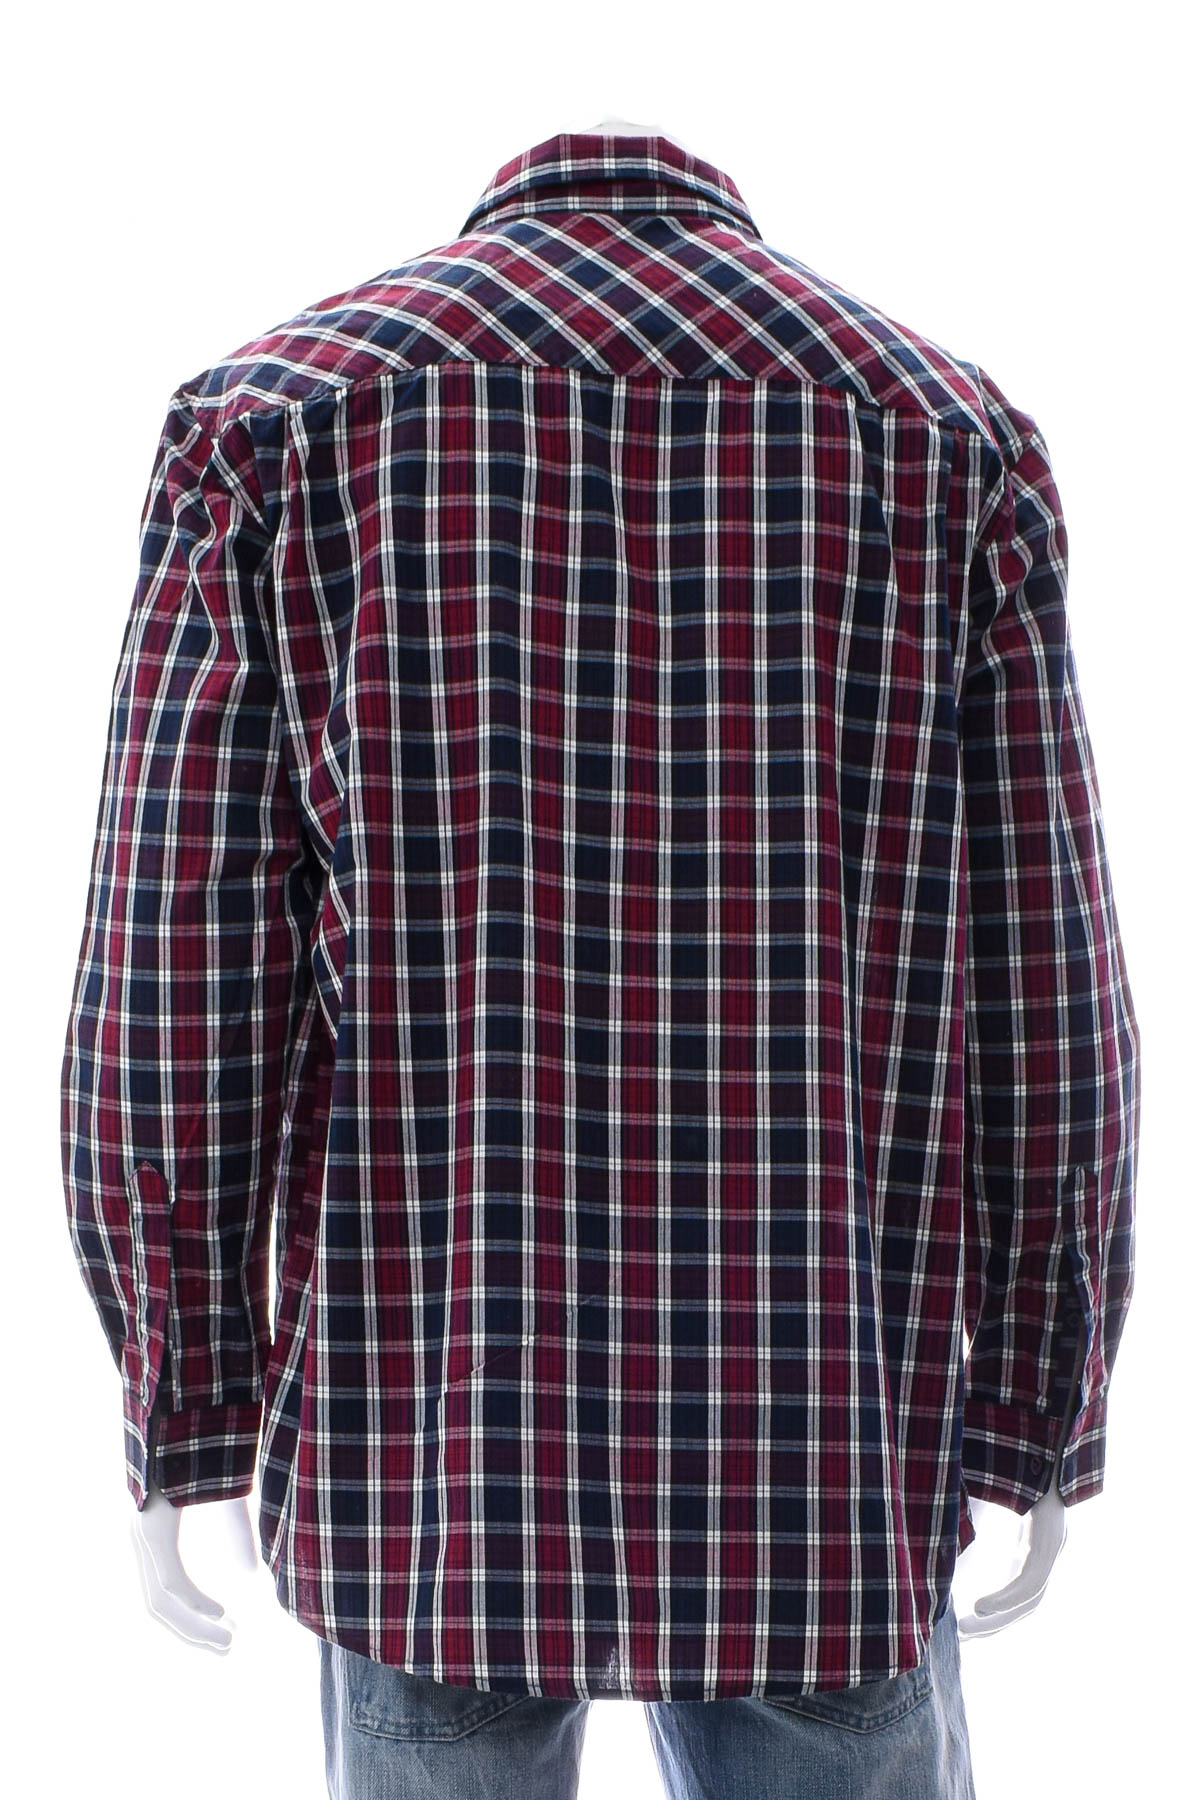 Ανδρικό πουκάμισο - Reward - 1